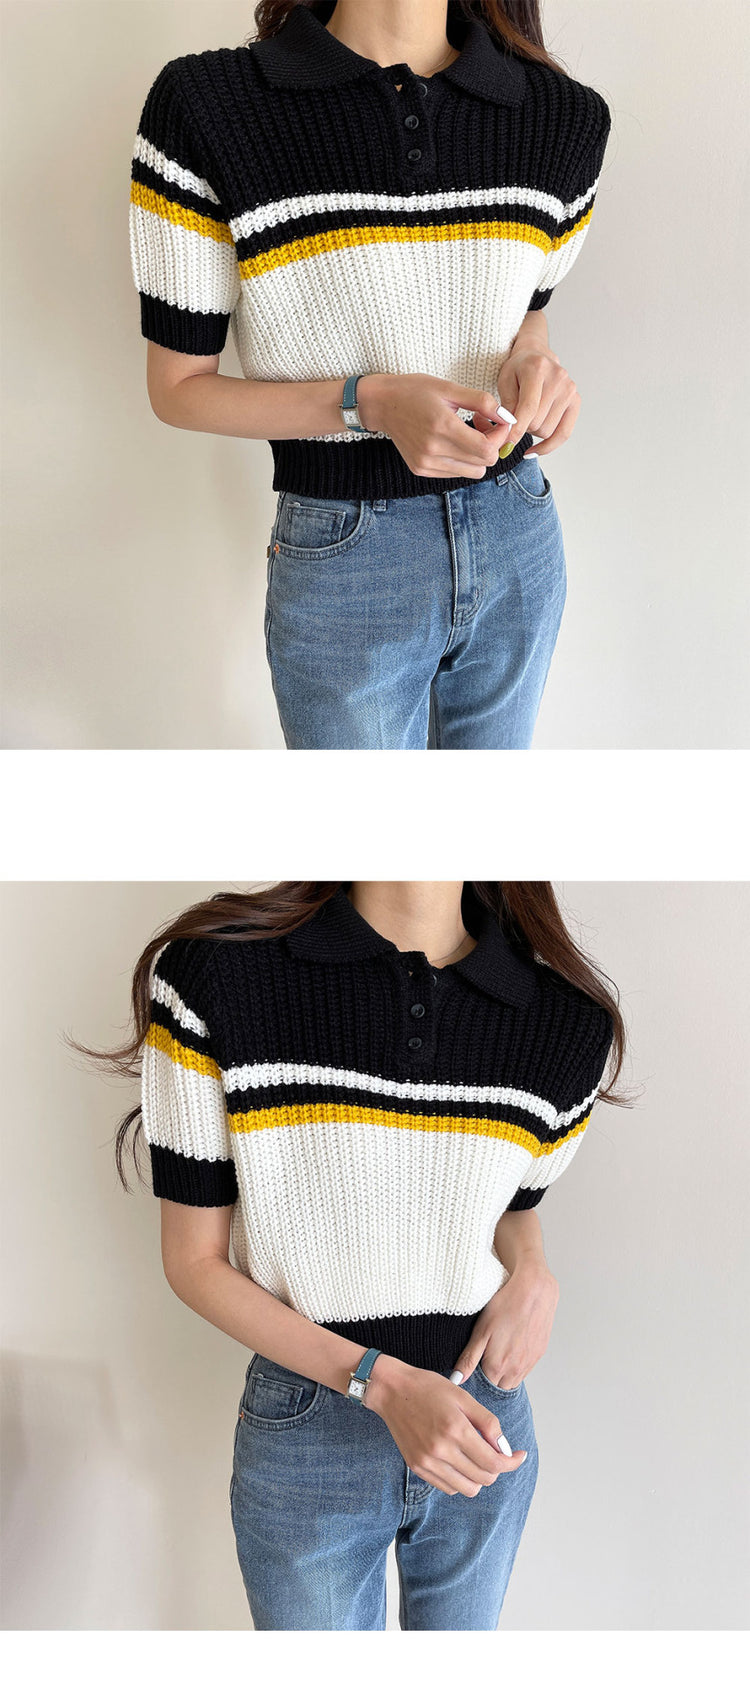 Theoneshopsレディース ファッション 配色 スウェット 春 新作 合わせやすい 韓国 気質 オシャレ 半袖 ニットセーター